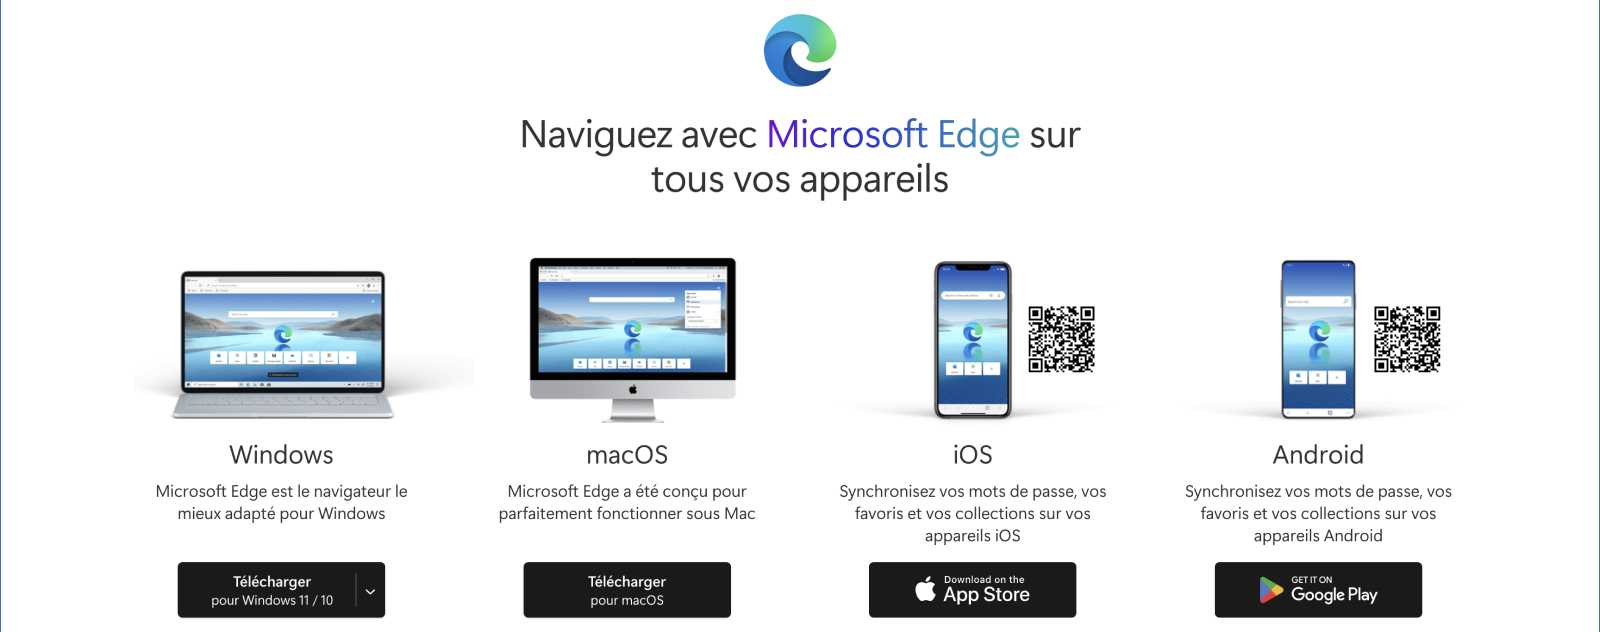 Télécharger le navigateur Microsoft Edge